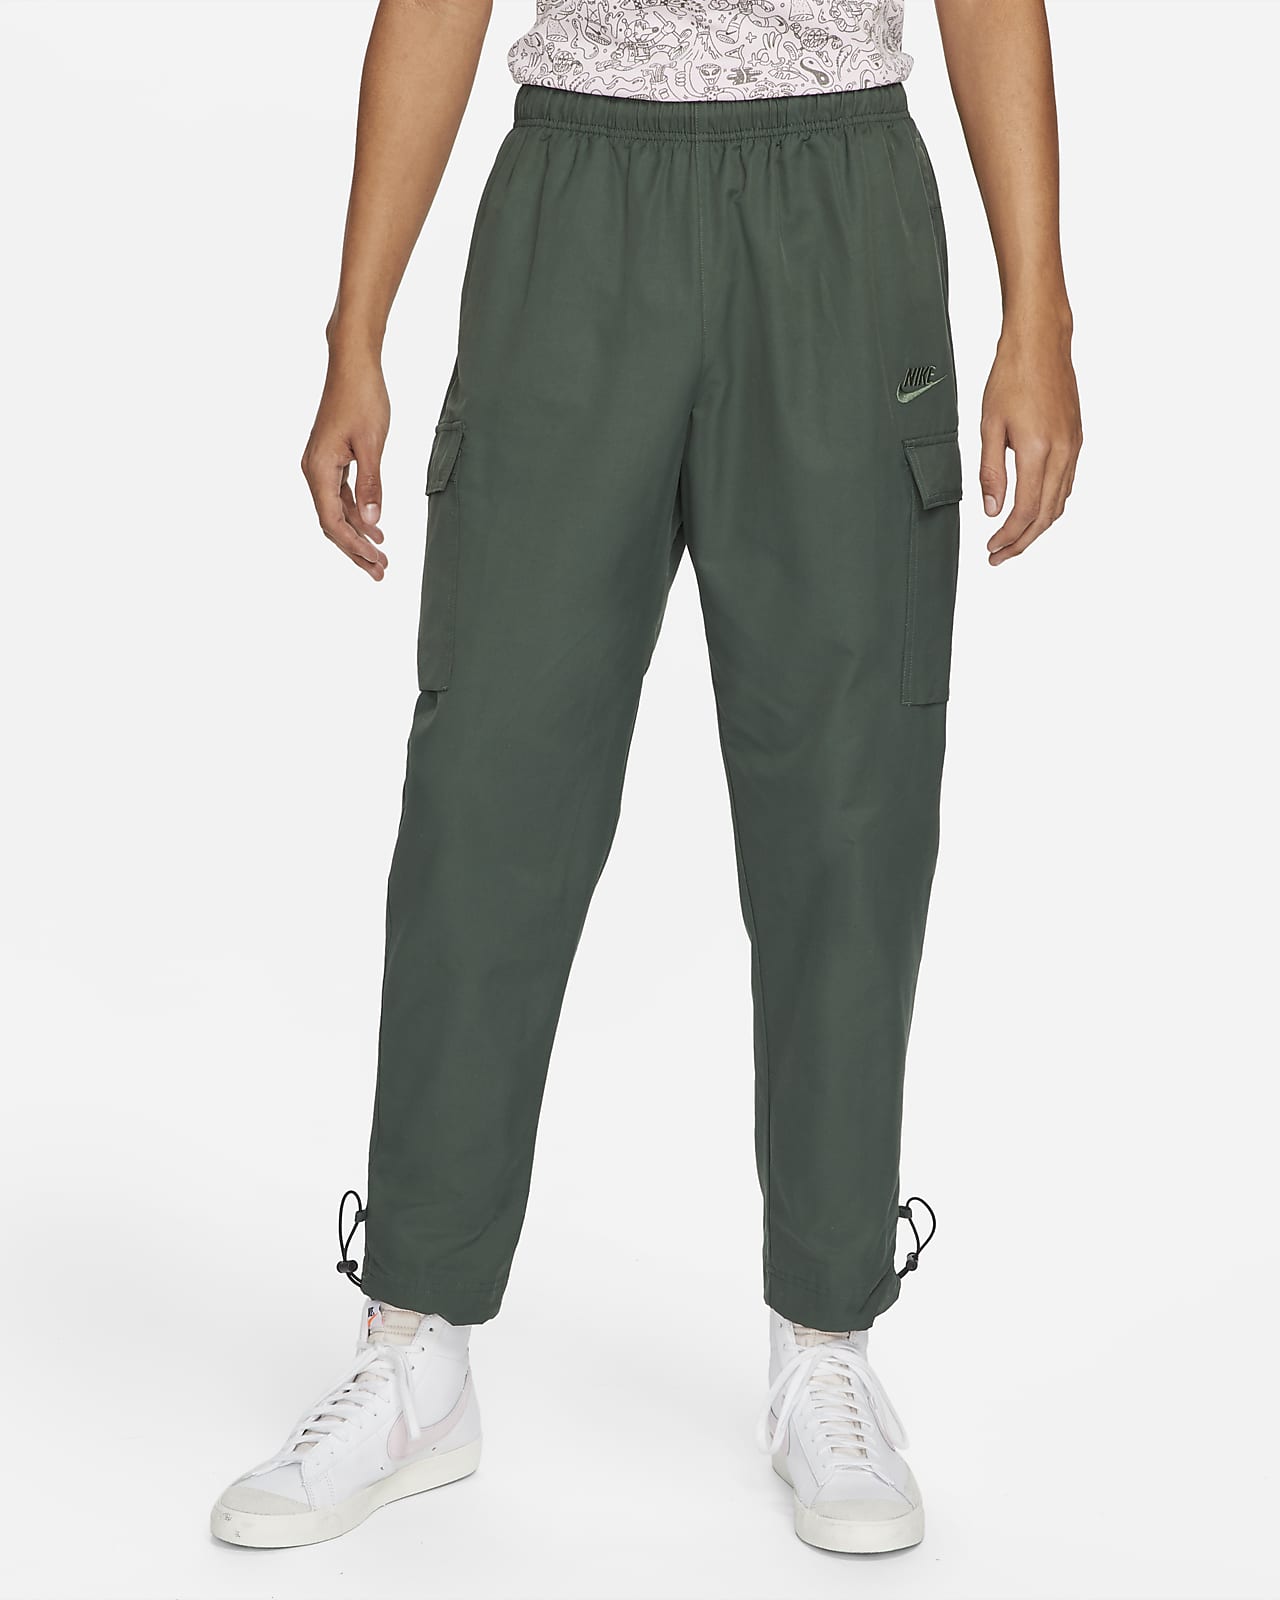 Nike Sportswear Men's Woven Cargo Pants. Nike.com